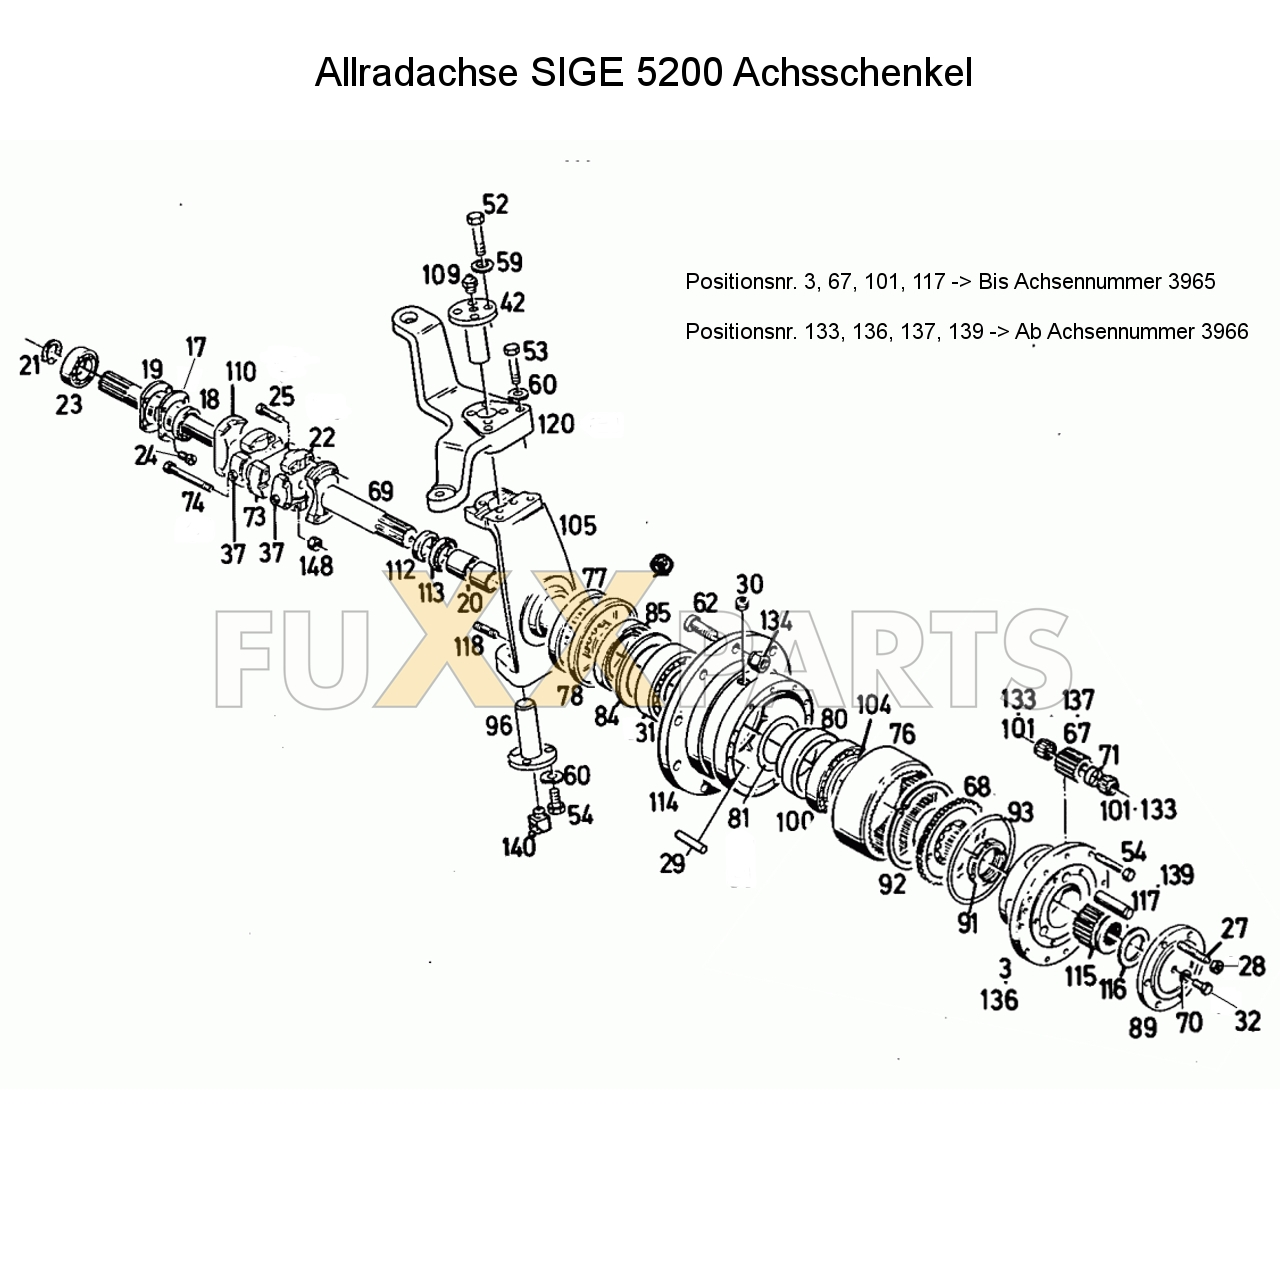 D 10006 Allradachse SIGE 5200 Achsschenkel